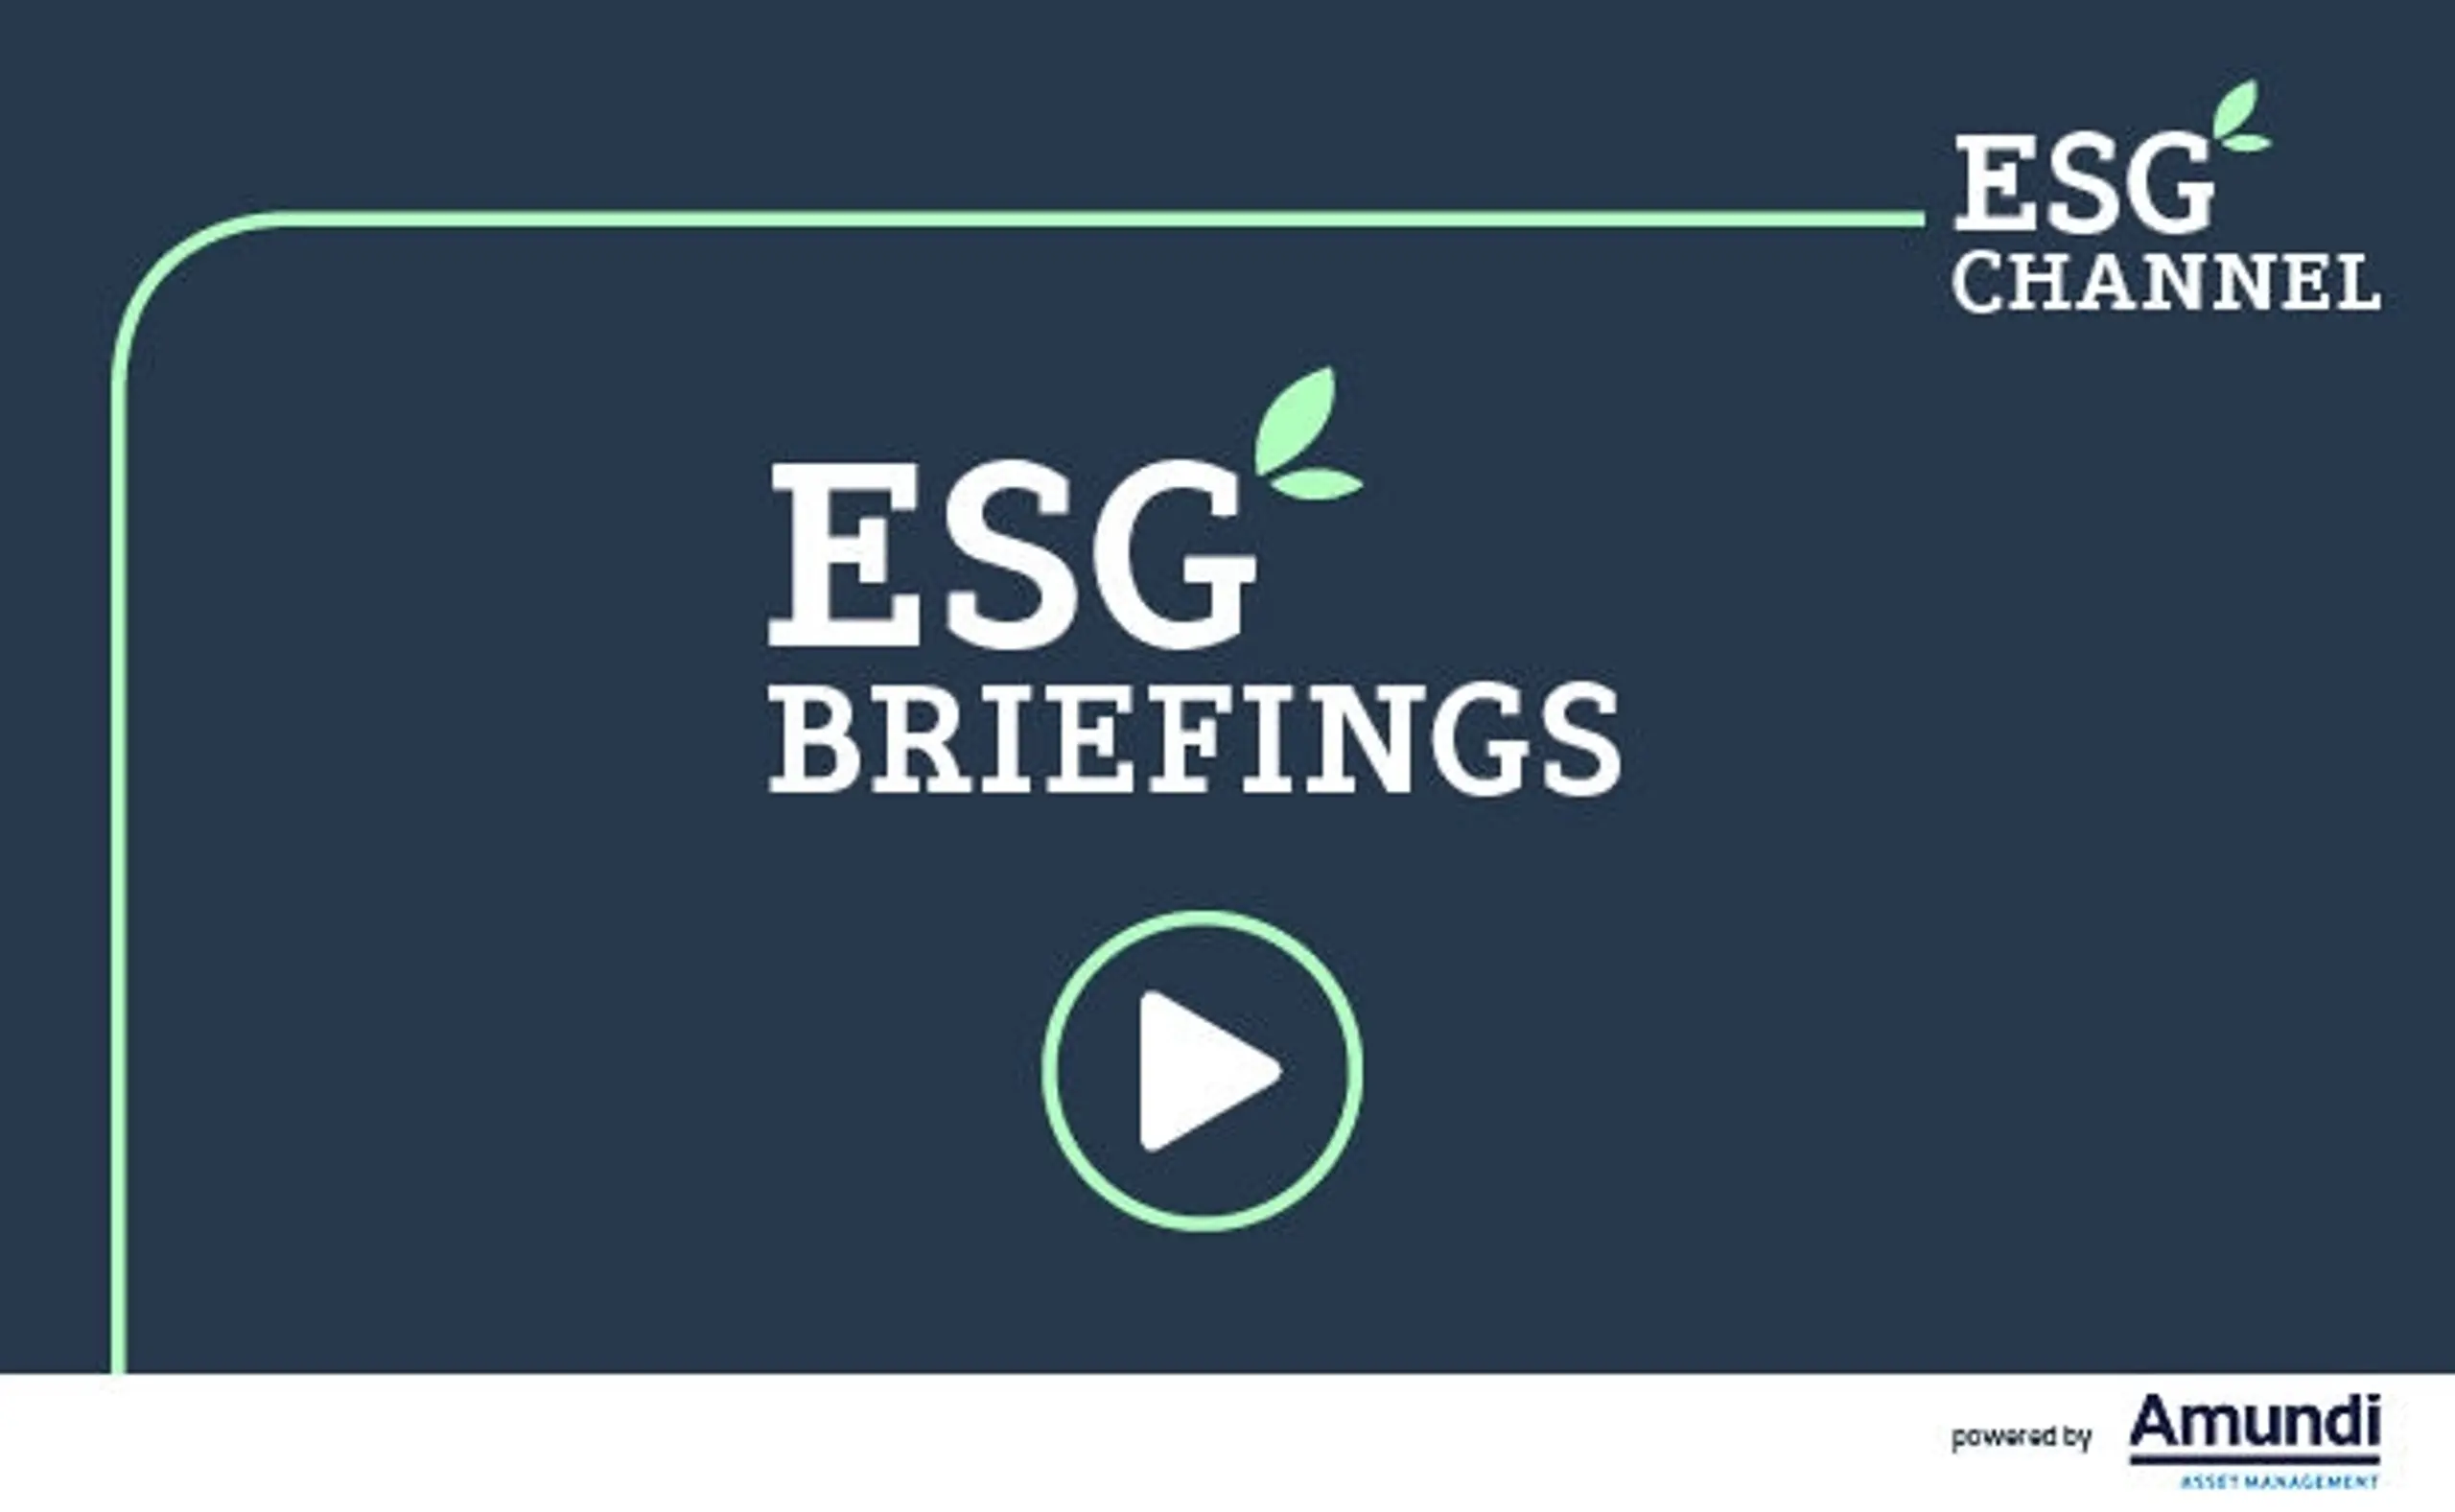 ESG-Briefings mit Amundi: Alle Videos und Podcasts im Überblick